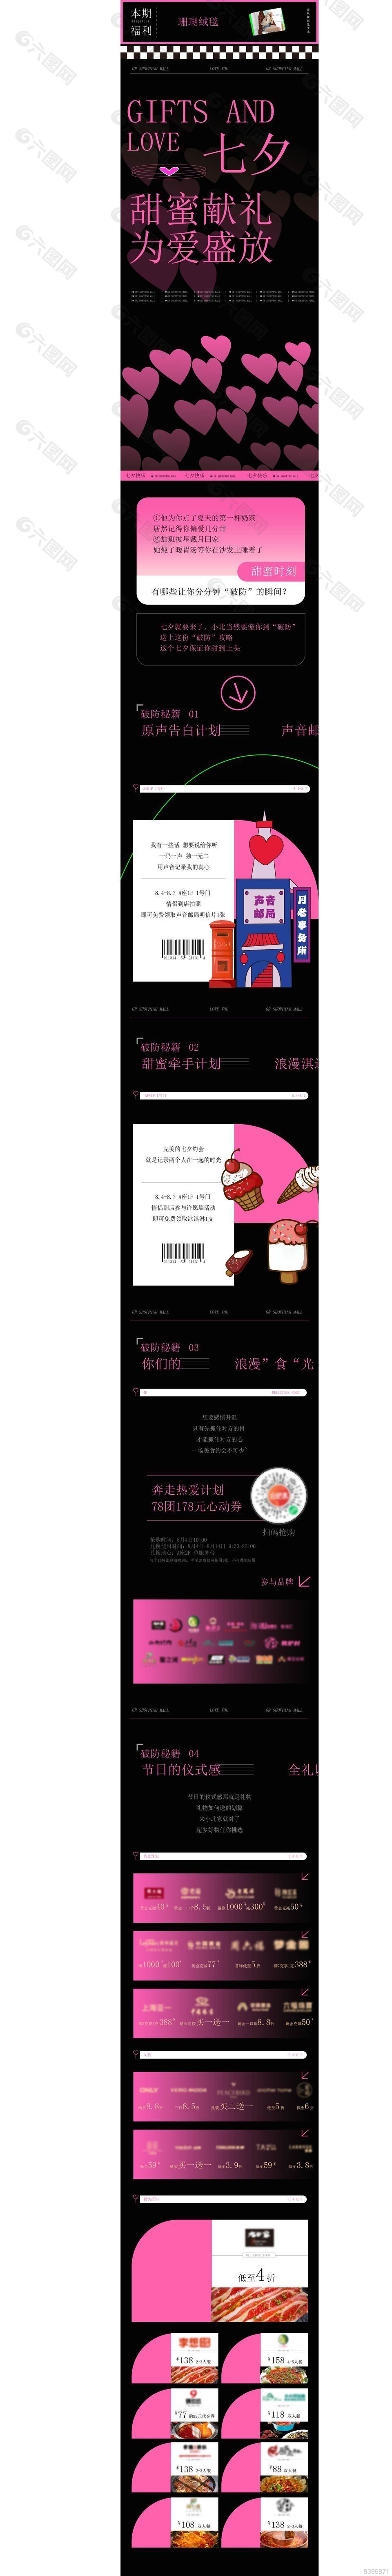 七夕商场活动宣传微信长图模板下载